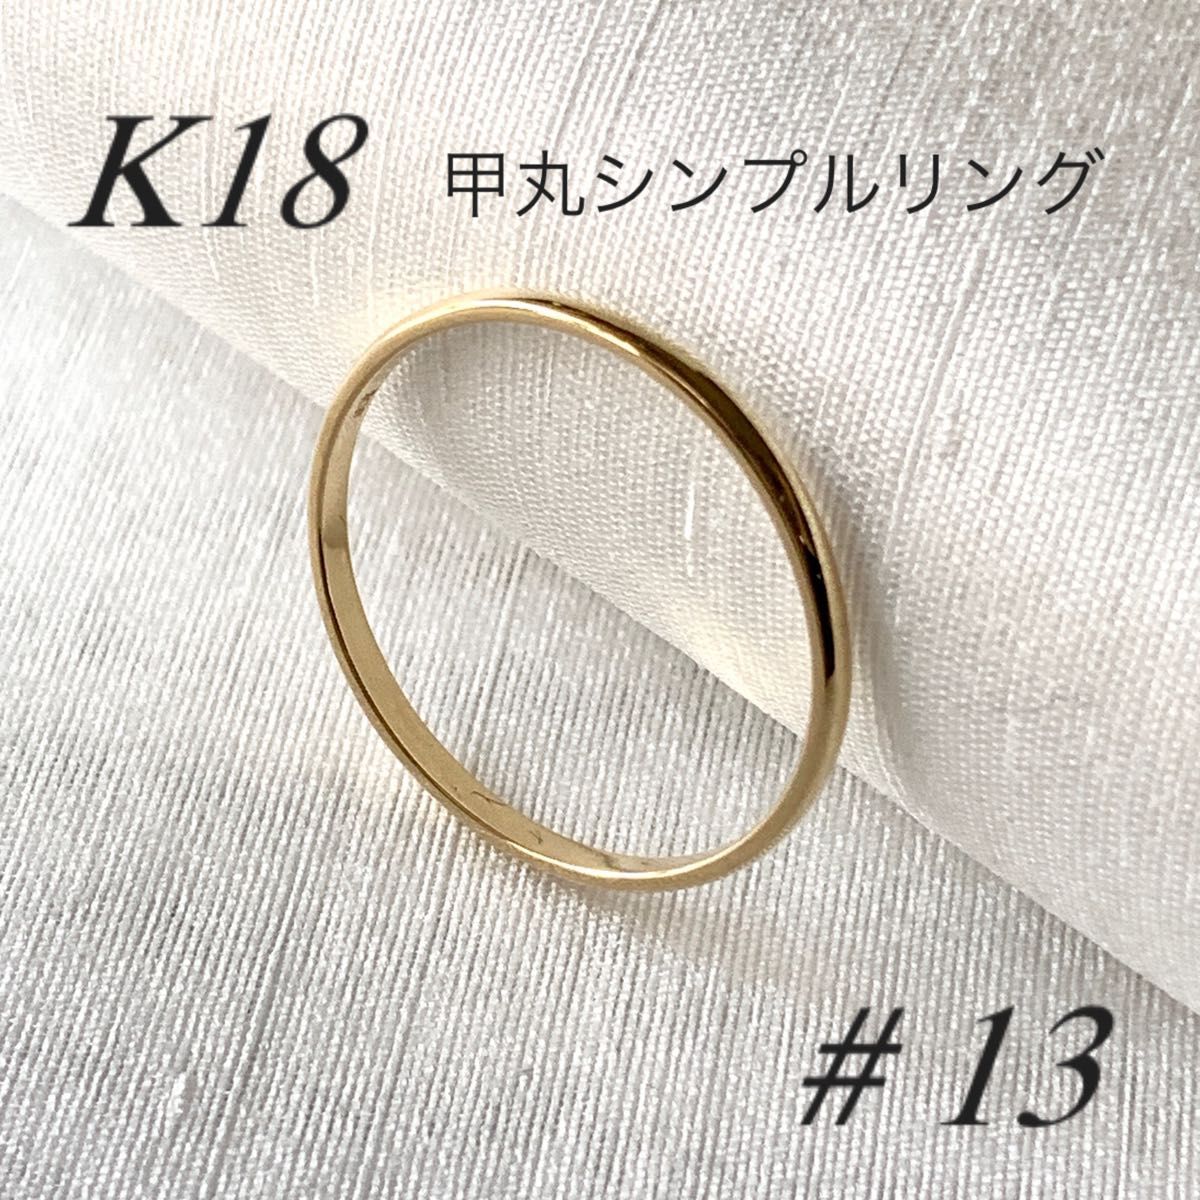 地金 18金 【甲丸リング 13号】Yゴールド K18刻印入 新品 最安値